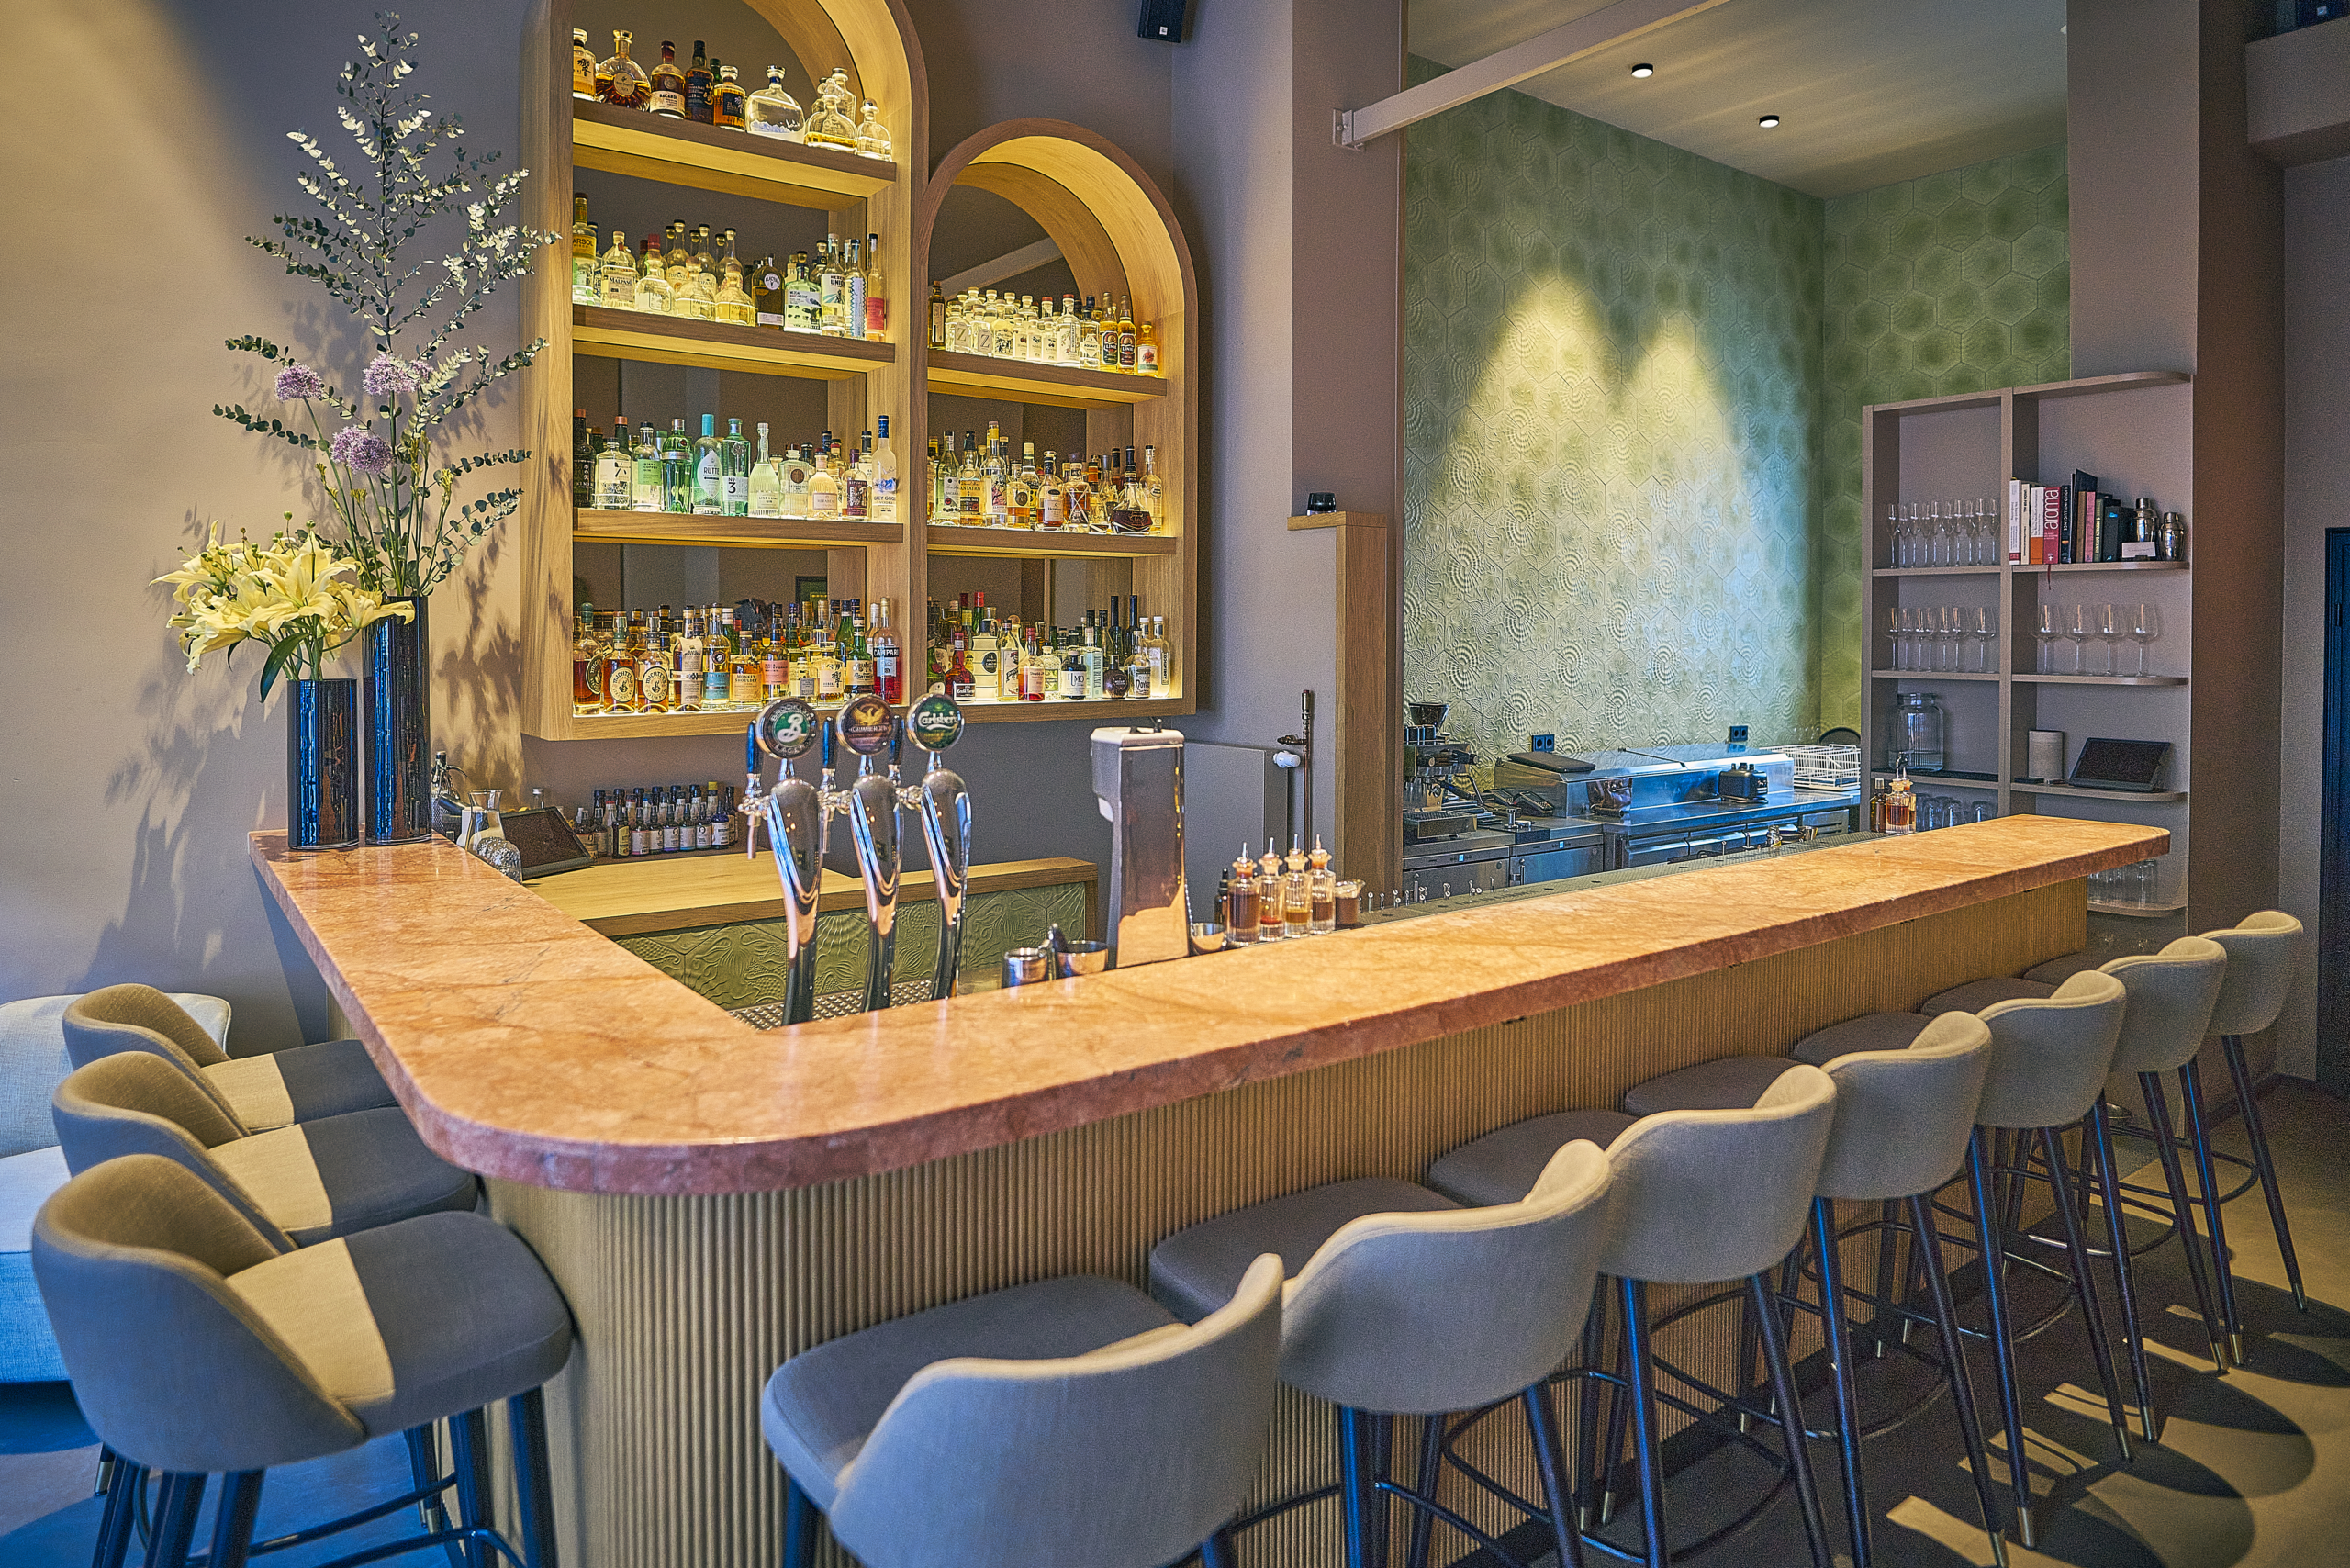 In sechs wechselnden Signature Drinks können sich die Gäste der stilvollen Bar Liquid Garden einmal um den Globus trinken (©Marc Sill)